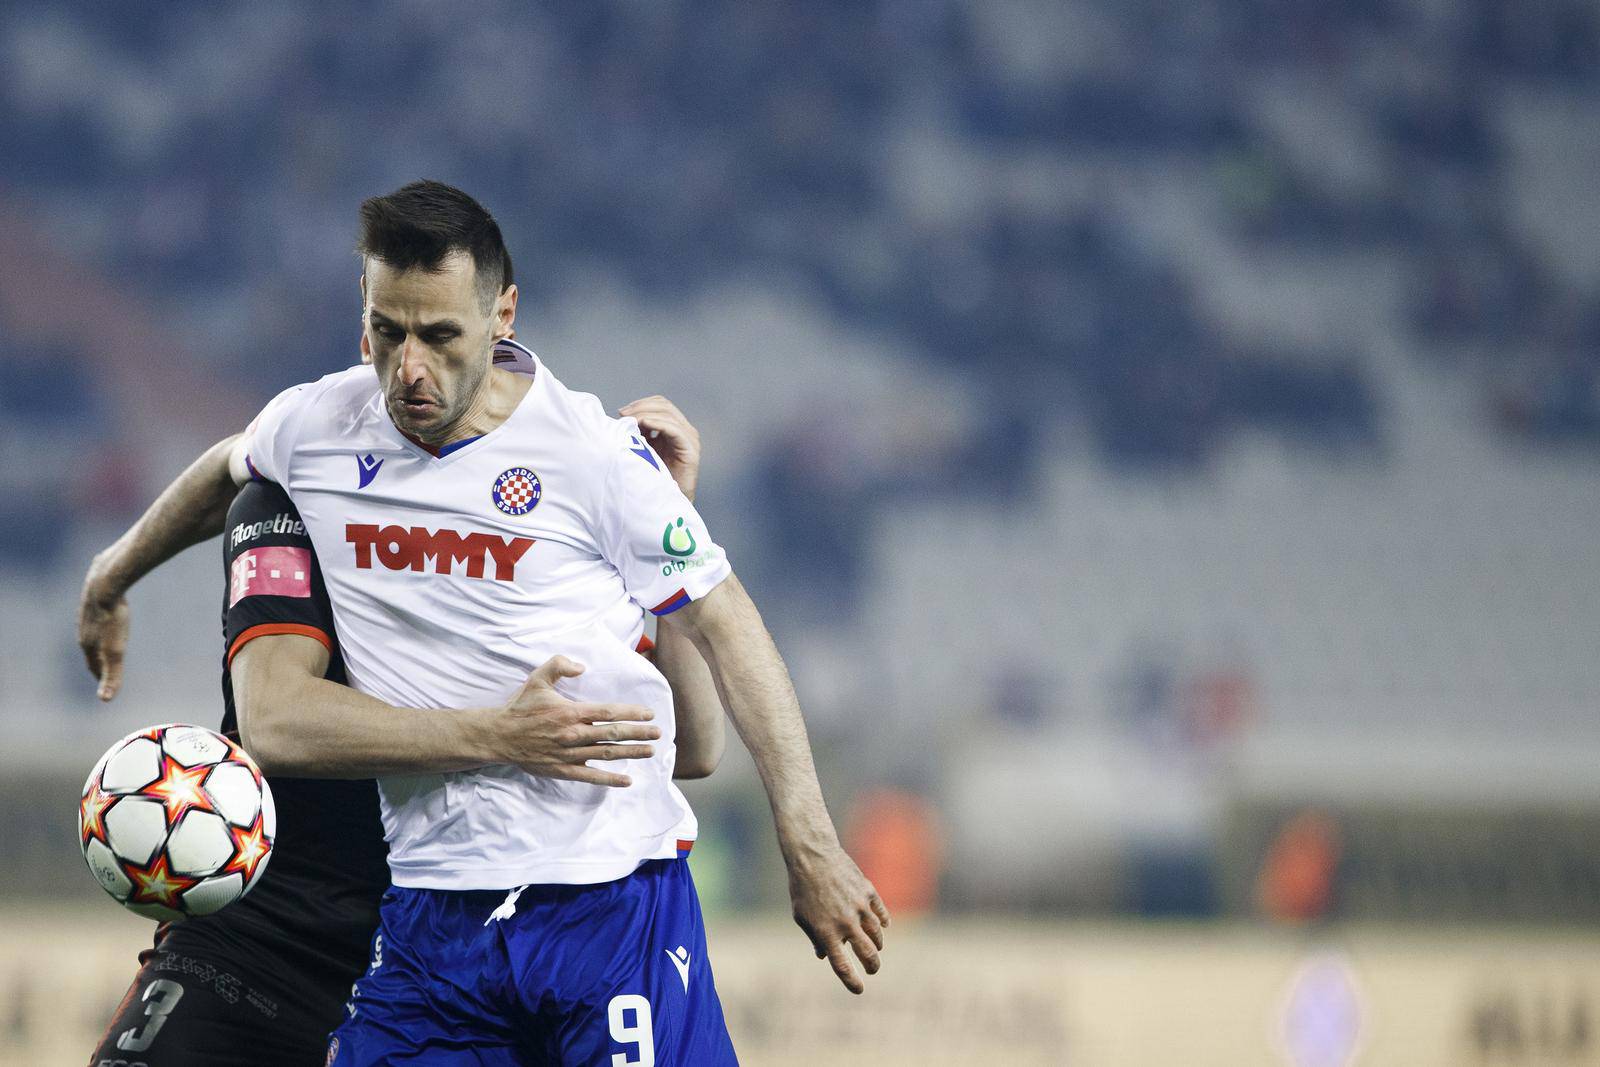 Nogometaši Hajduka prvi su finalisti SuperSport Hrvatskog kupa nakon što su na svom Poljudu svladali Goricu 